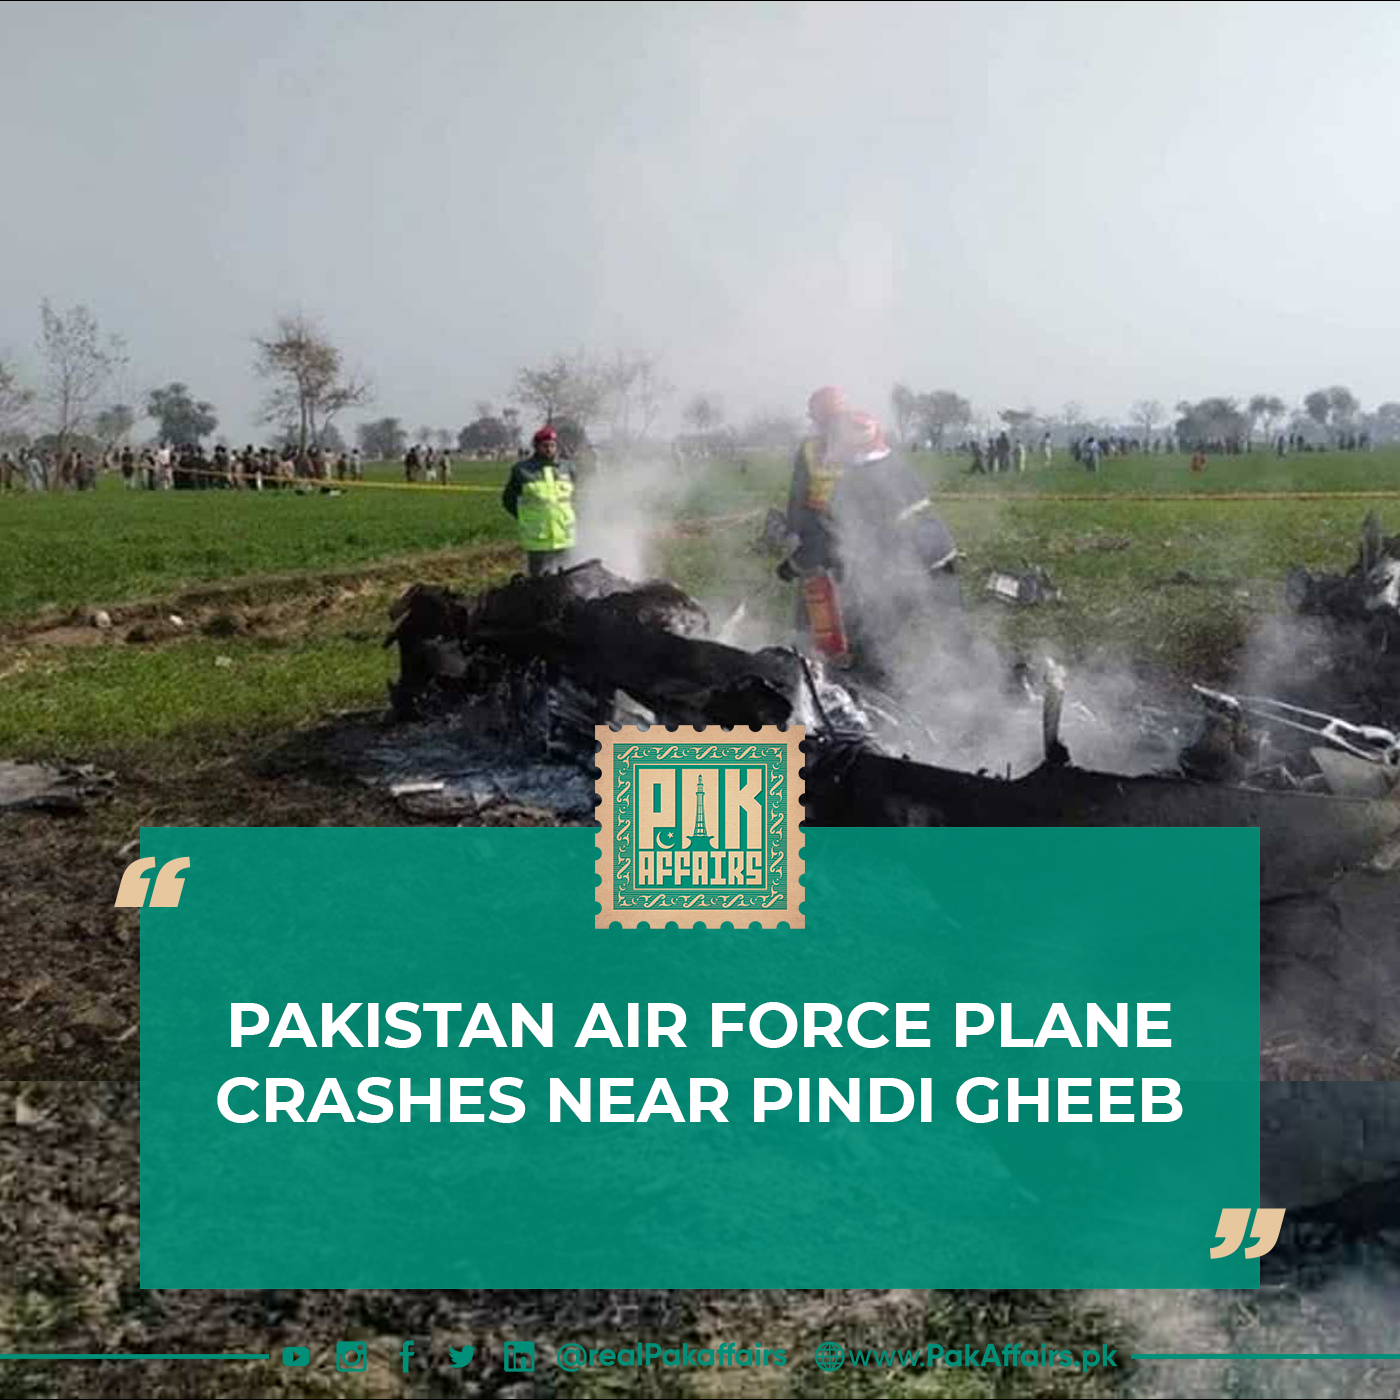 Pakistan Air Force plane crashes near Pindi Gheeb